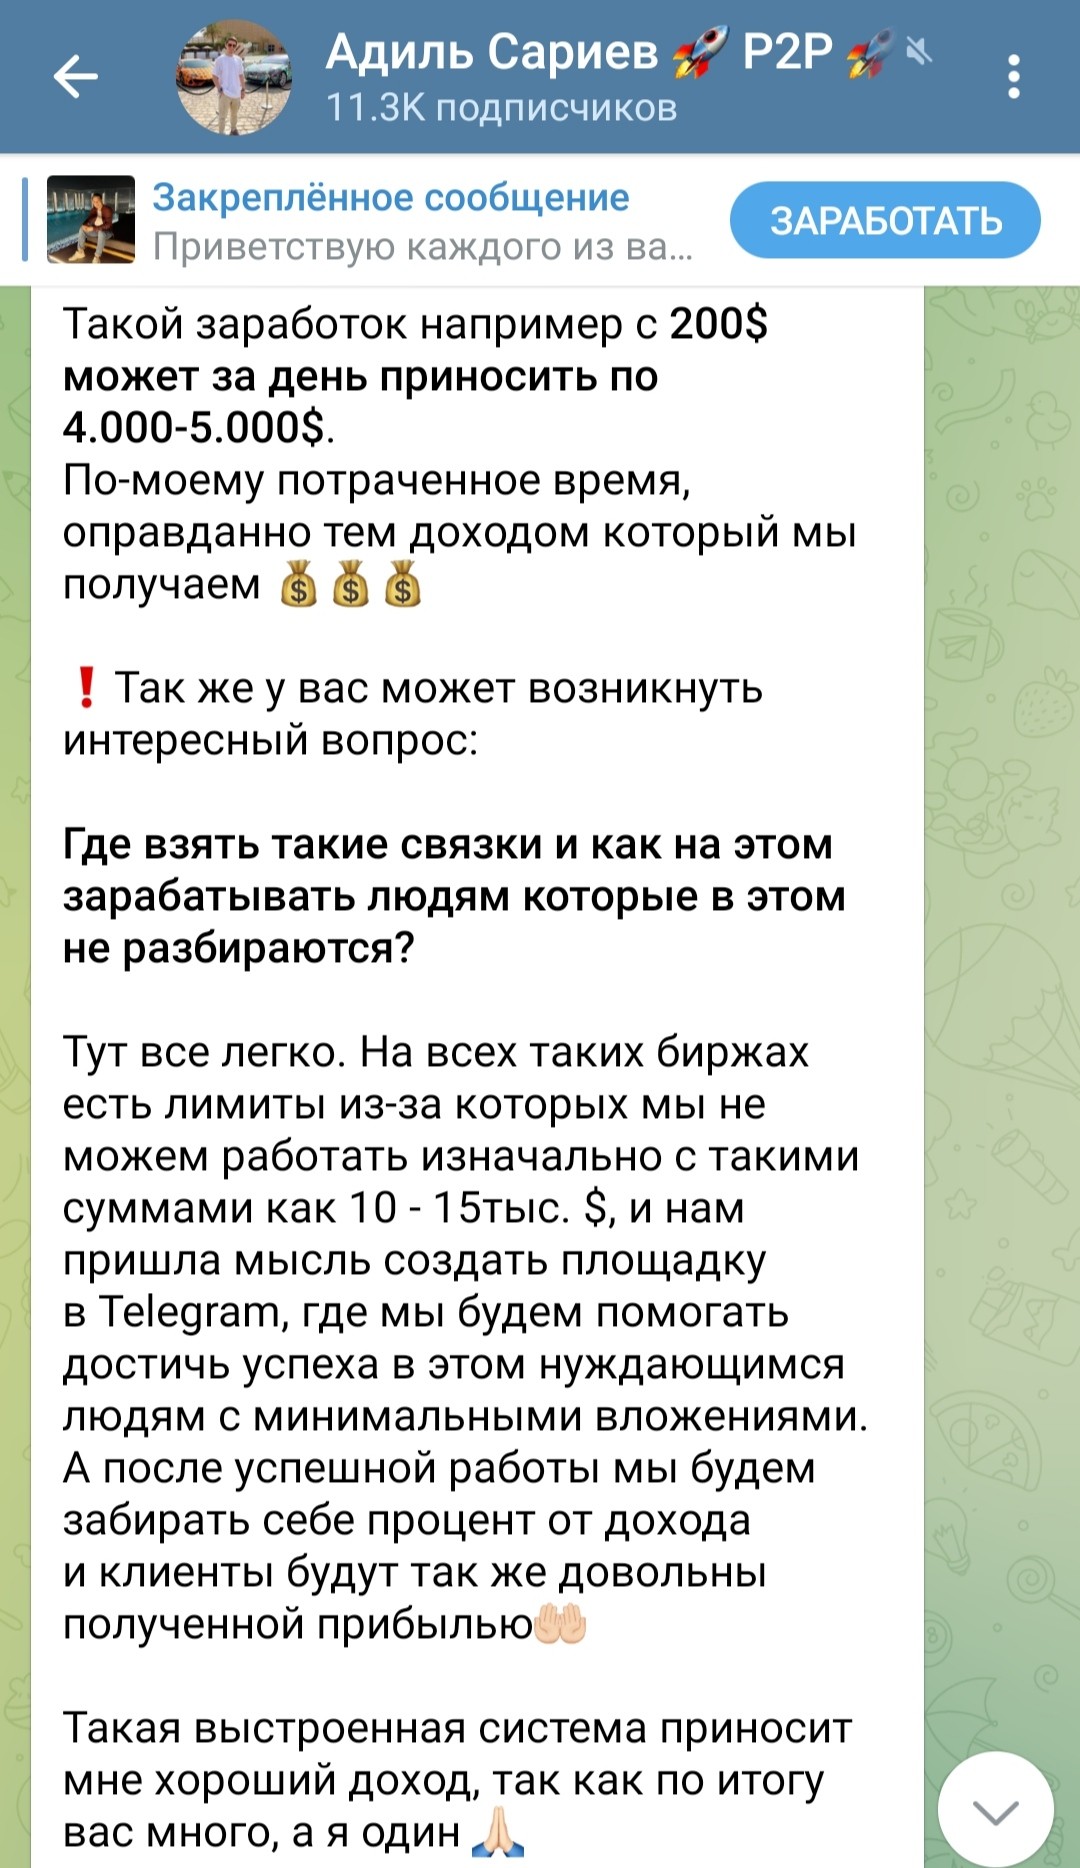 Обзор телеграм канала Адиль Сариев